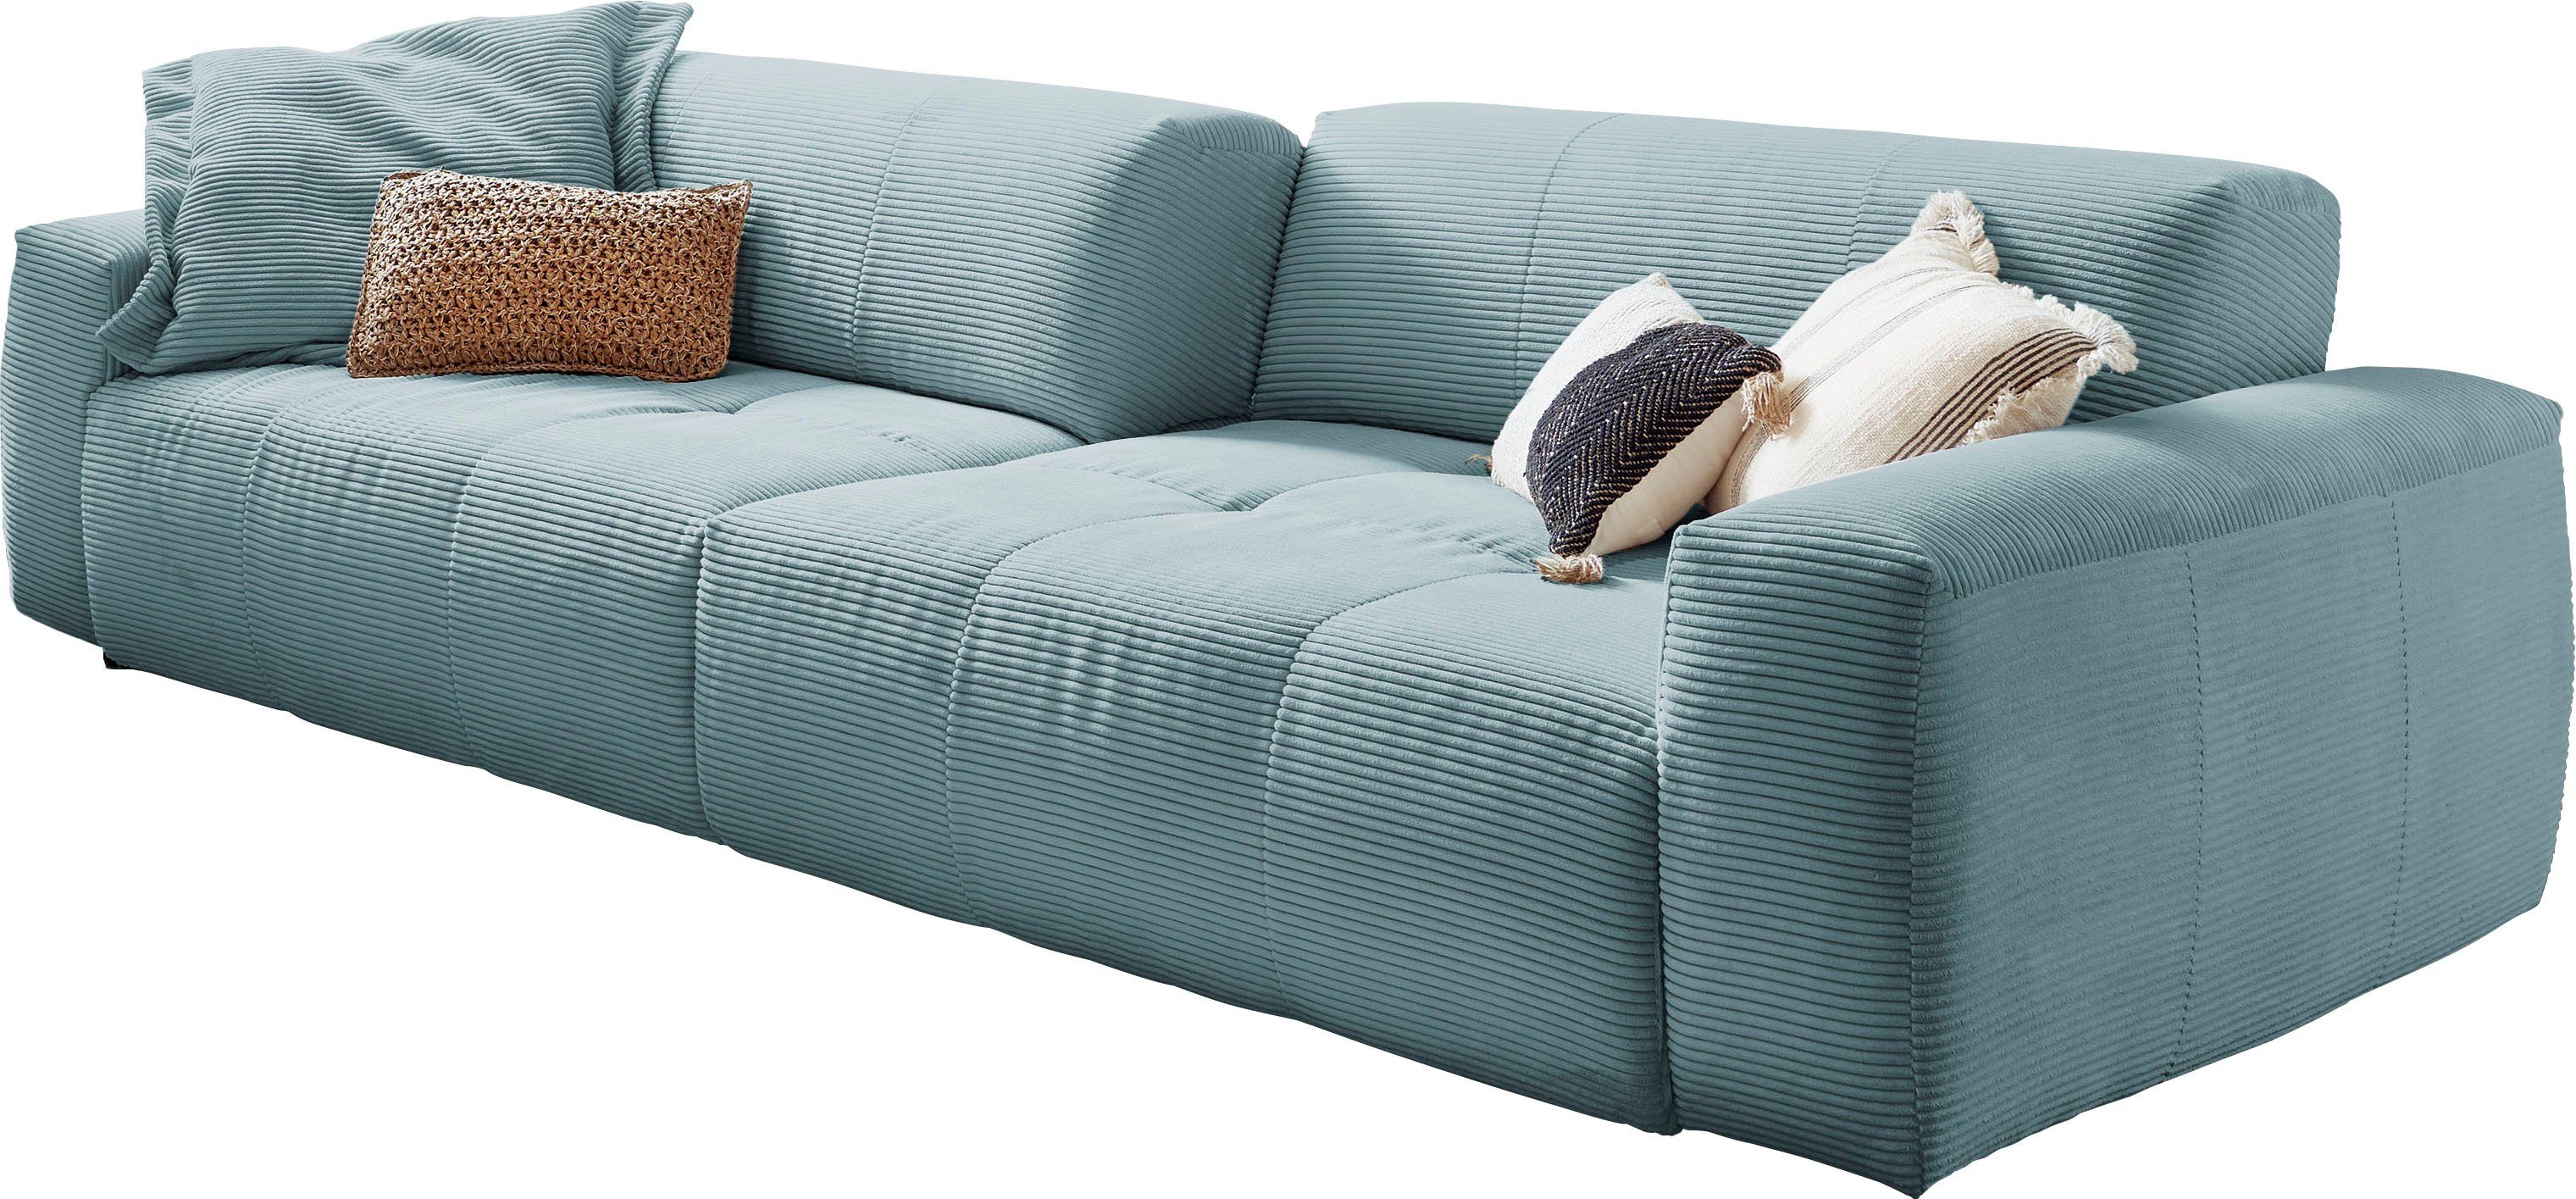 3C Candy Big-Sofa Yoshy, Zwei Sitztiefen durch verstellbare Rückenlehne, Bezug in Cord hellblau